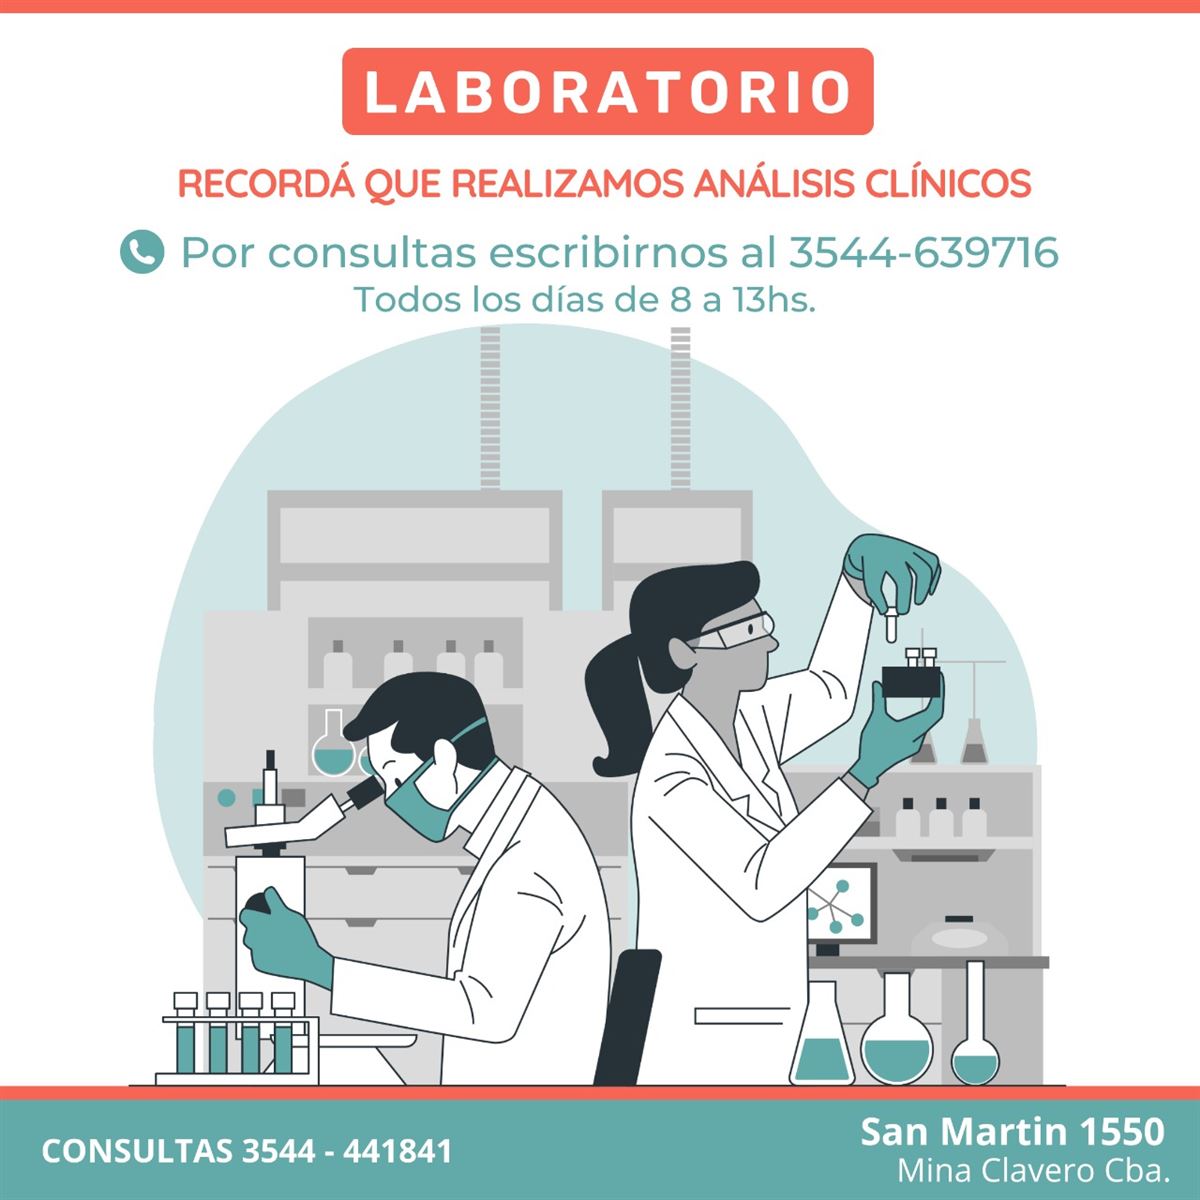 Laboratorio - Servicio de Análisis Clínico - InfoGuia Traslasierra - Laboratorio - Servicios de análisis clínicos